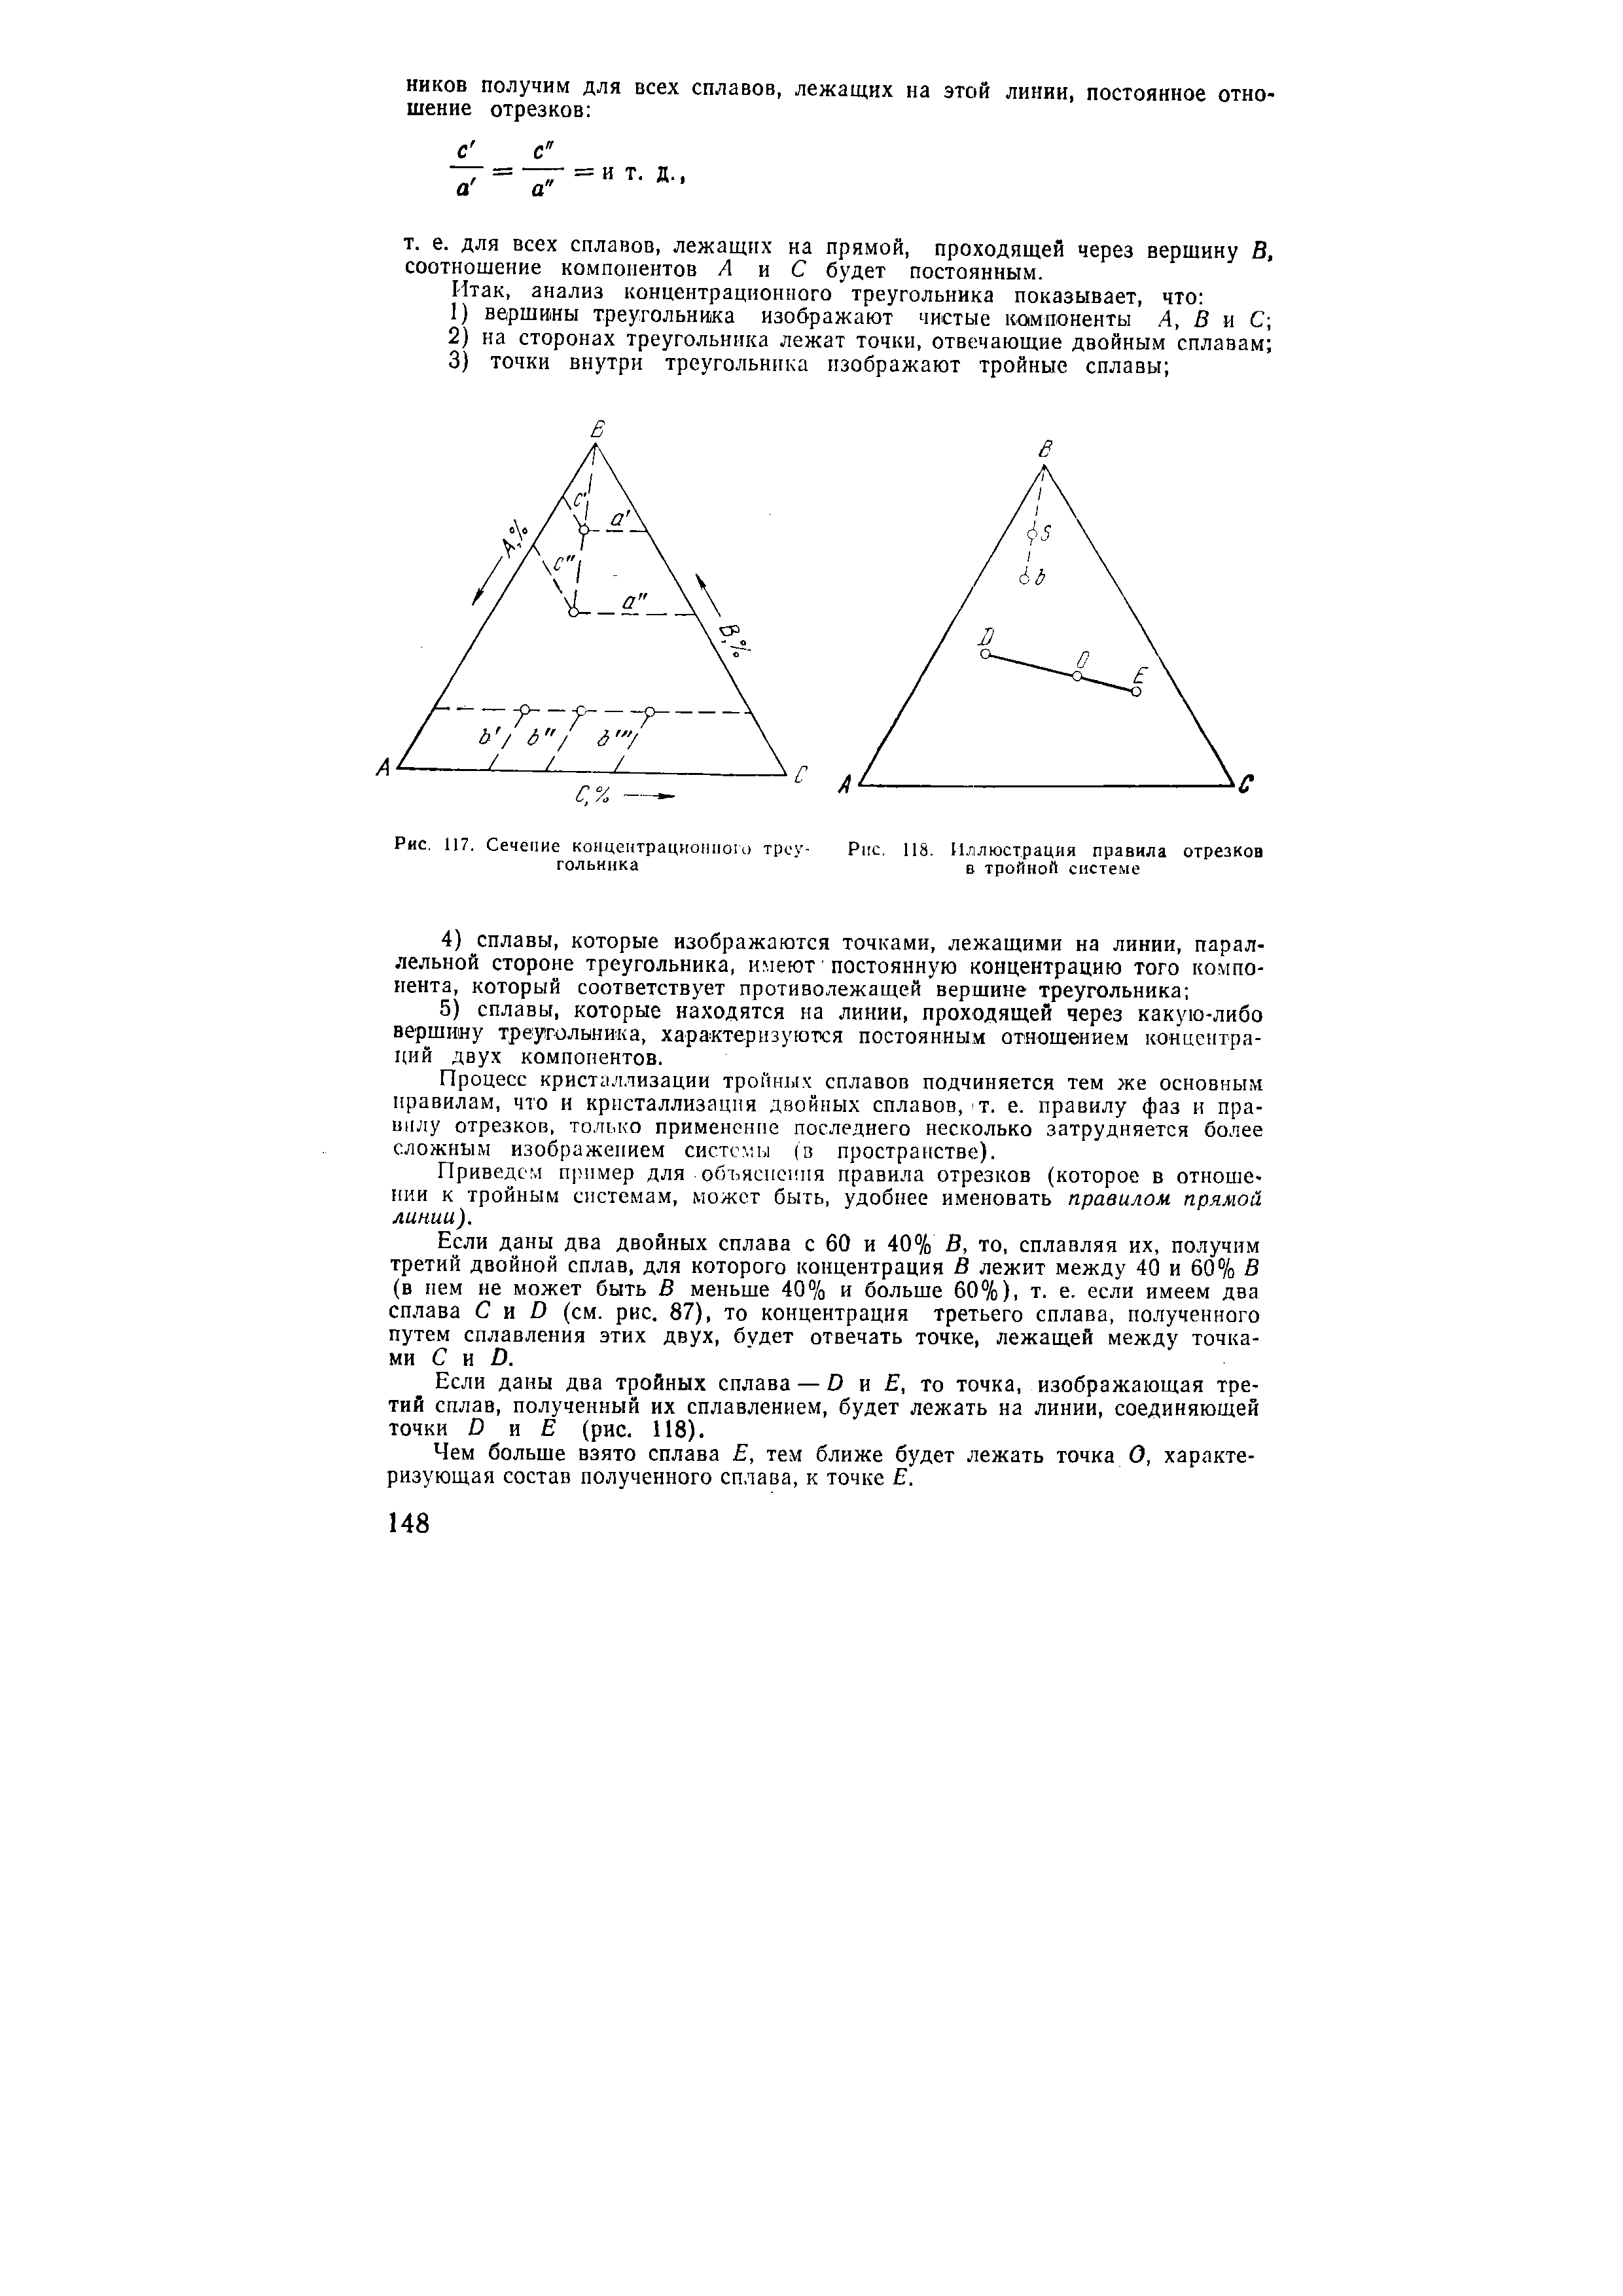 Рис. 117, Сечение концентрационного треугольника
